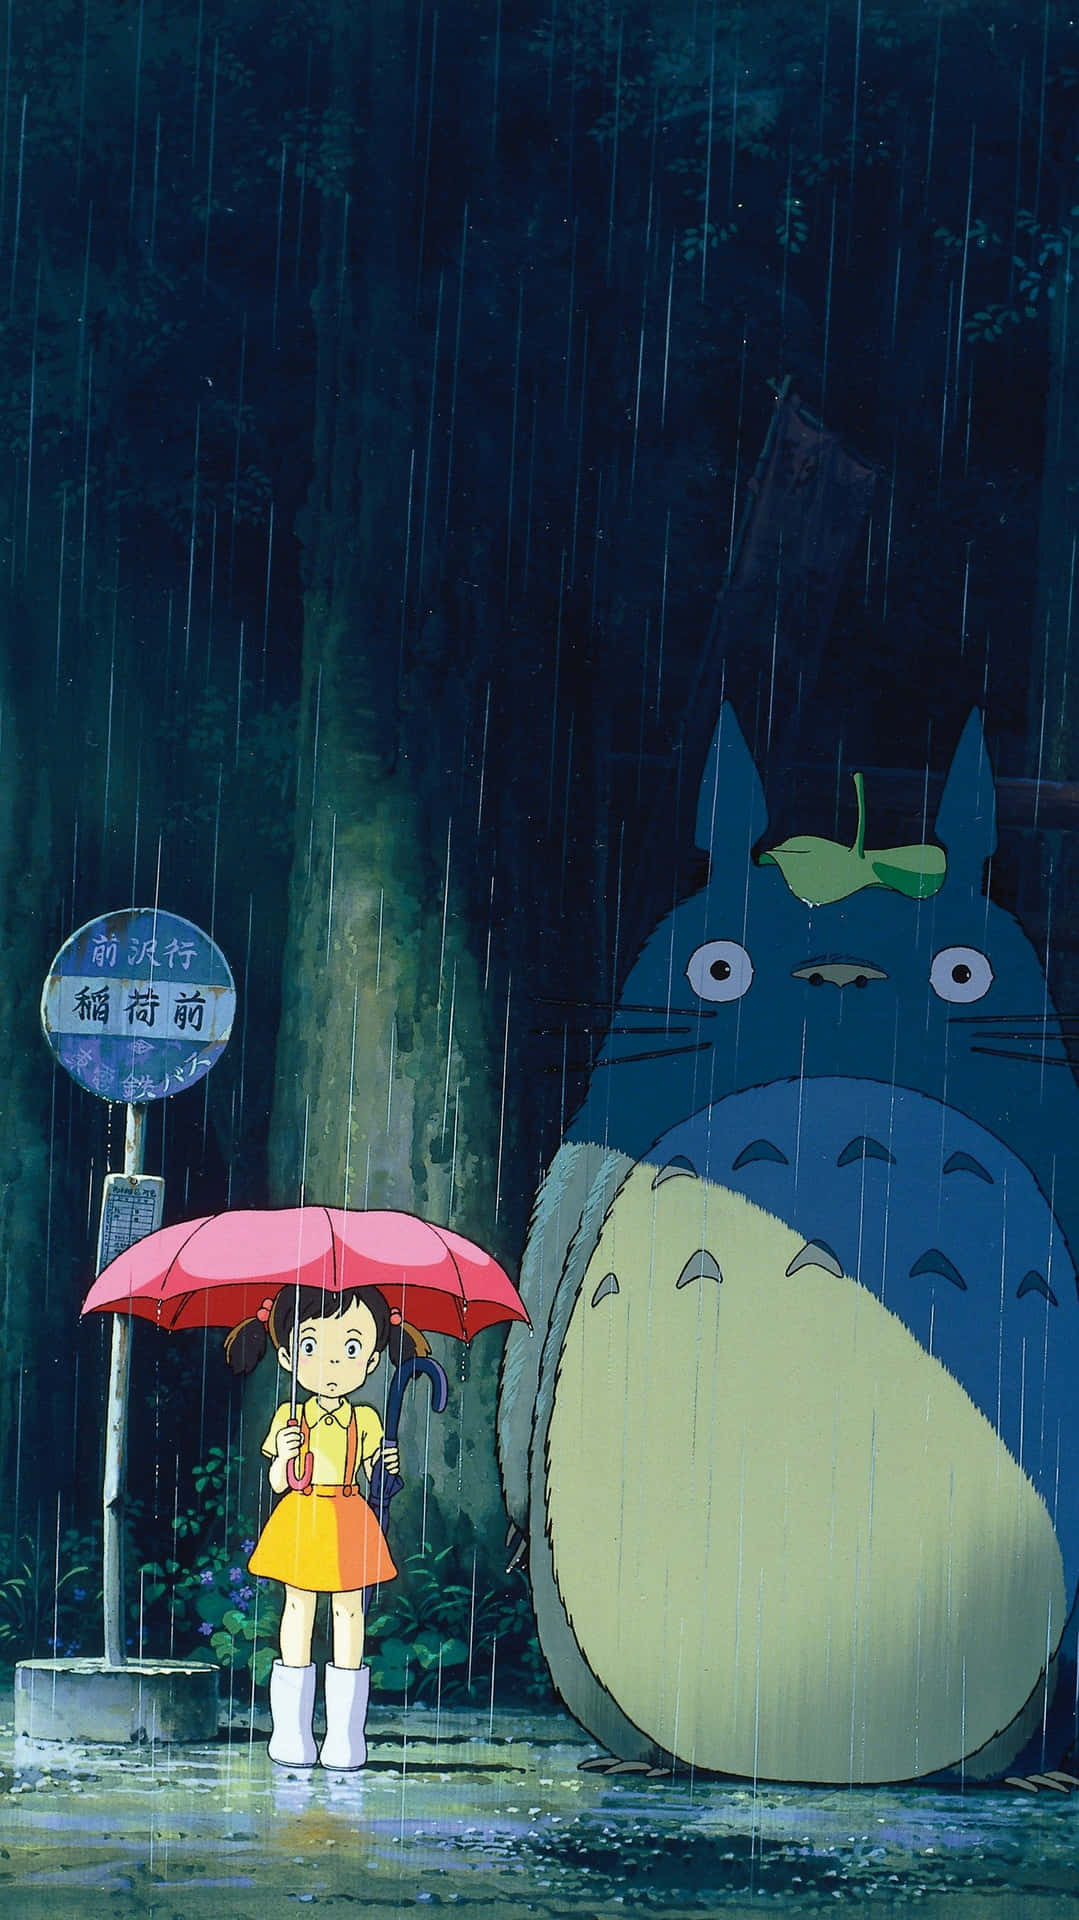 Undeleite Para Los Fanáticos - Teléfono Studio Ghibli. Fondo de pantalla